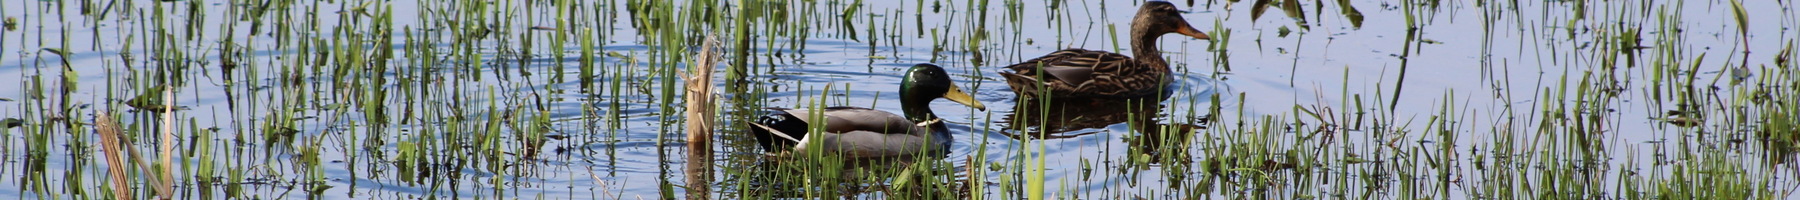 two ducks in water